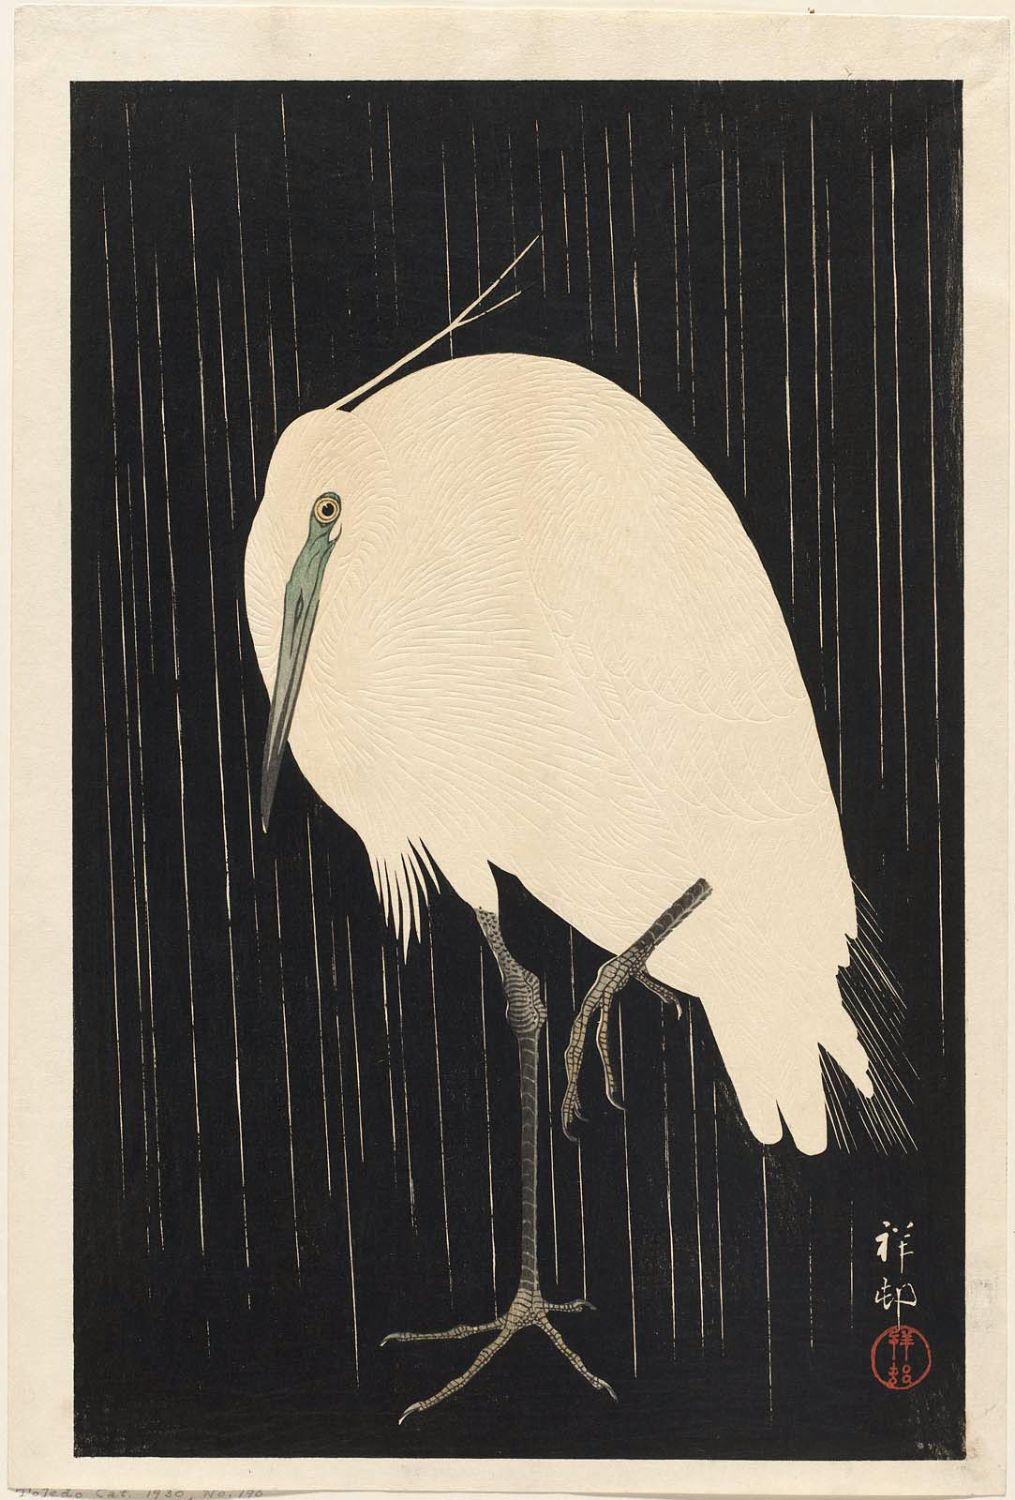 Ohara Koson - White heron standing in the rain